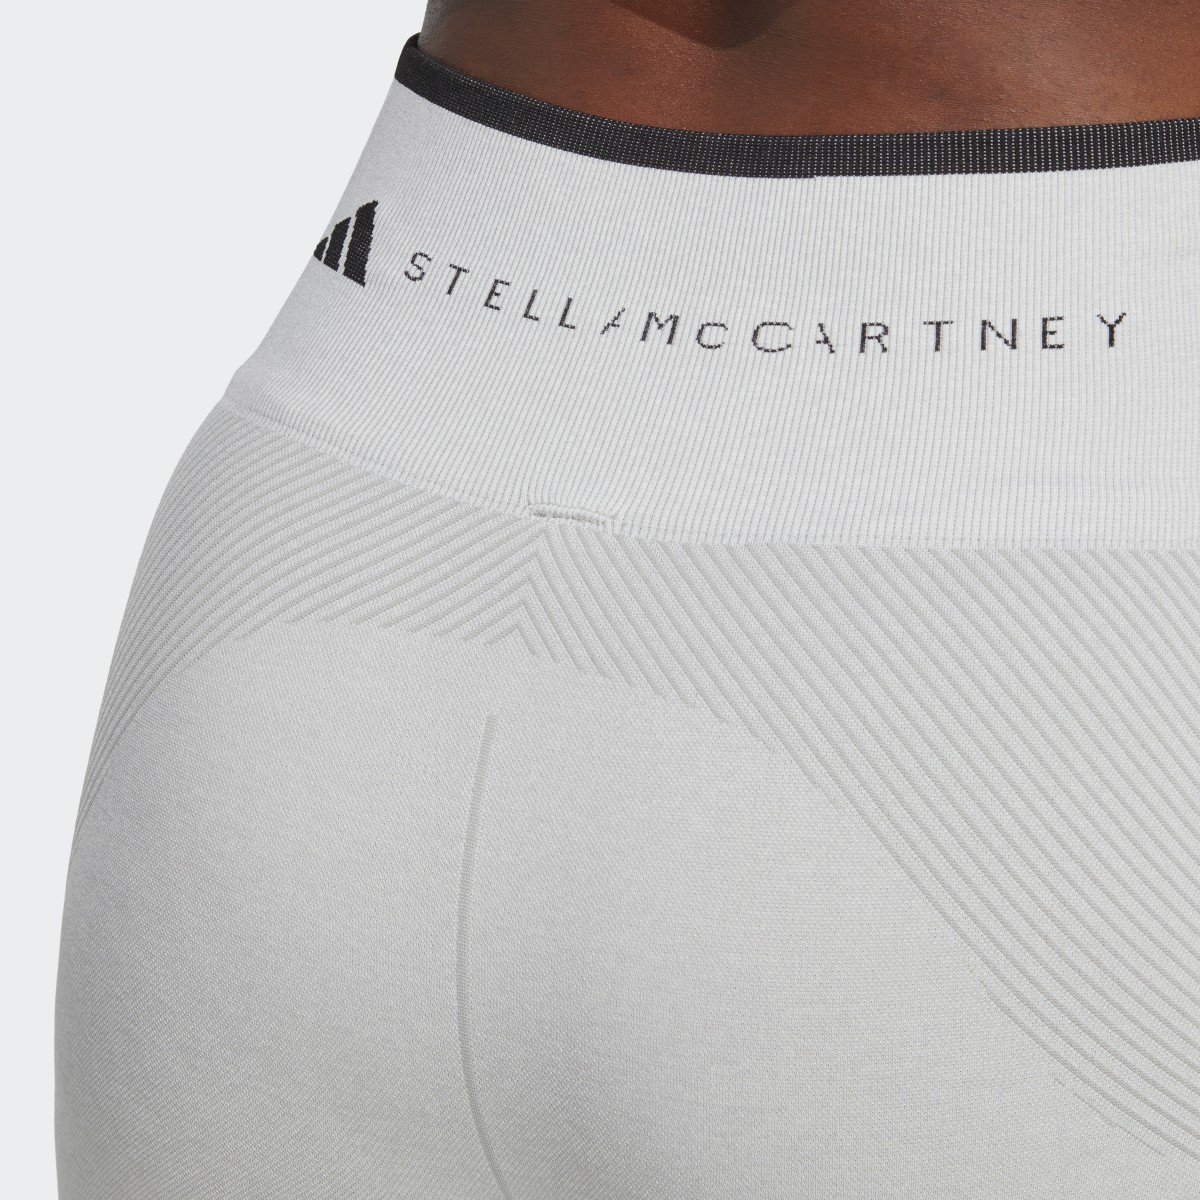 Adidas Calções sem Costuras para Ioga TrueStrength adidas by Stella McCartney. 7